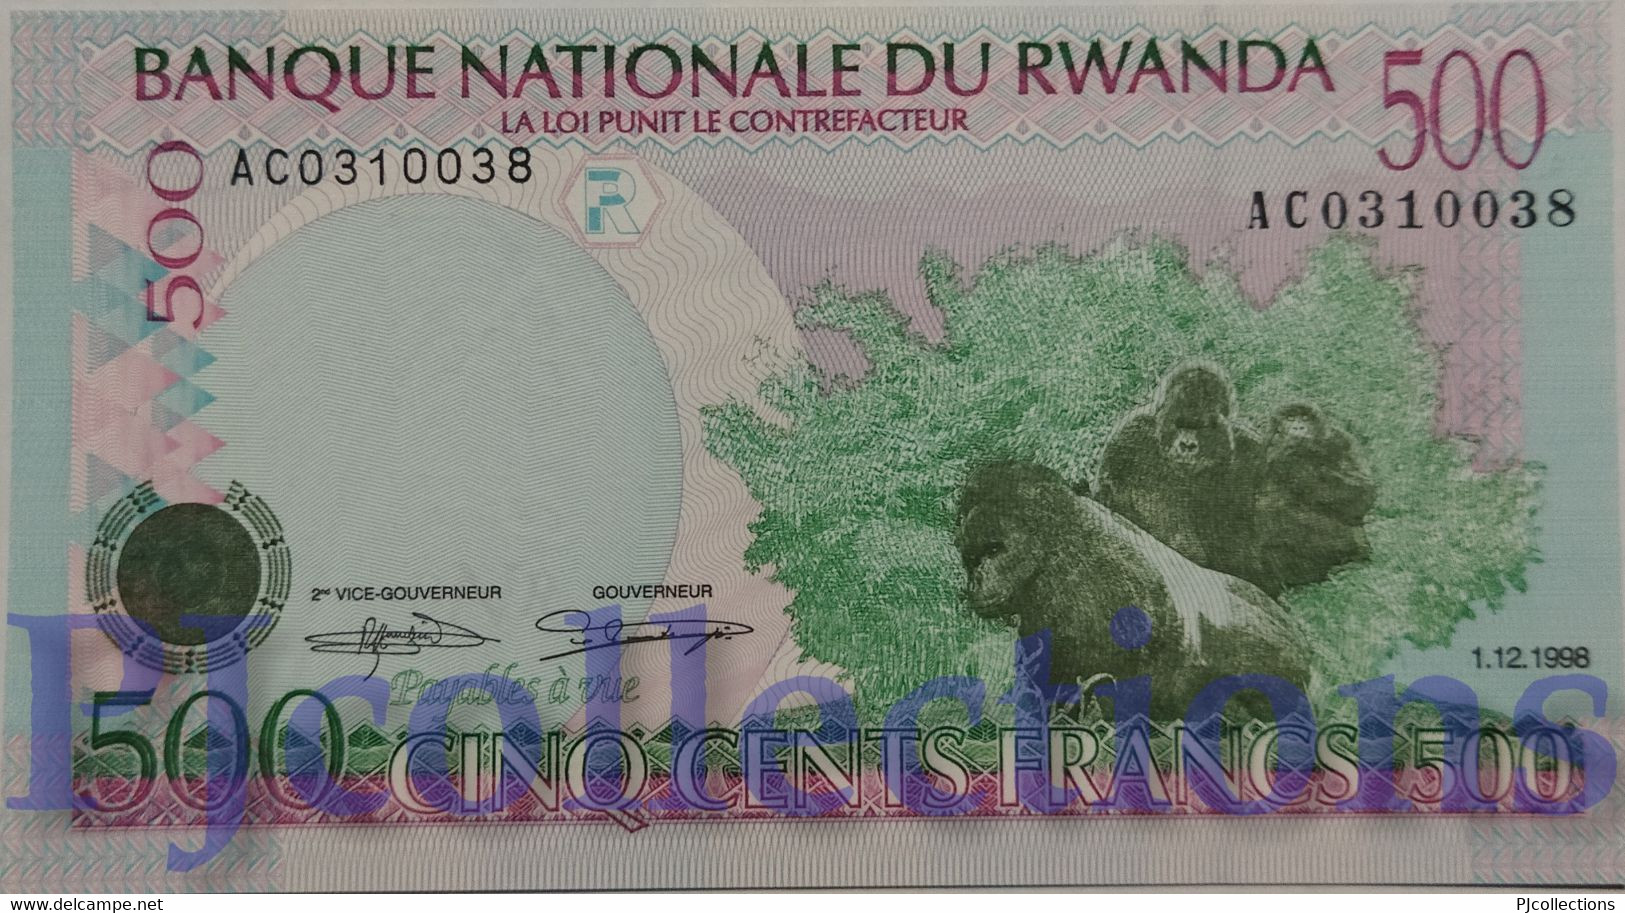 RWANDA 500 FRANCS 1998 PICK 26a UNC - Rwanda